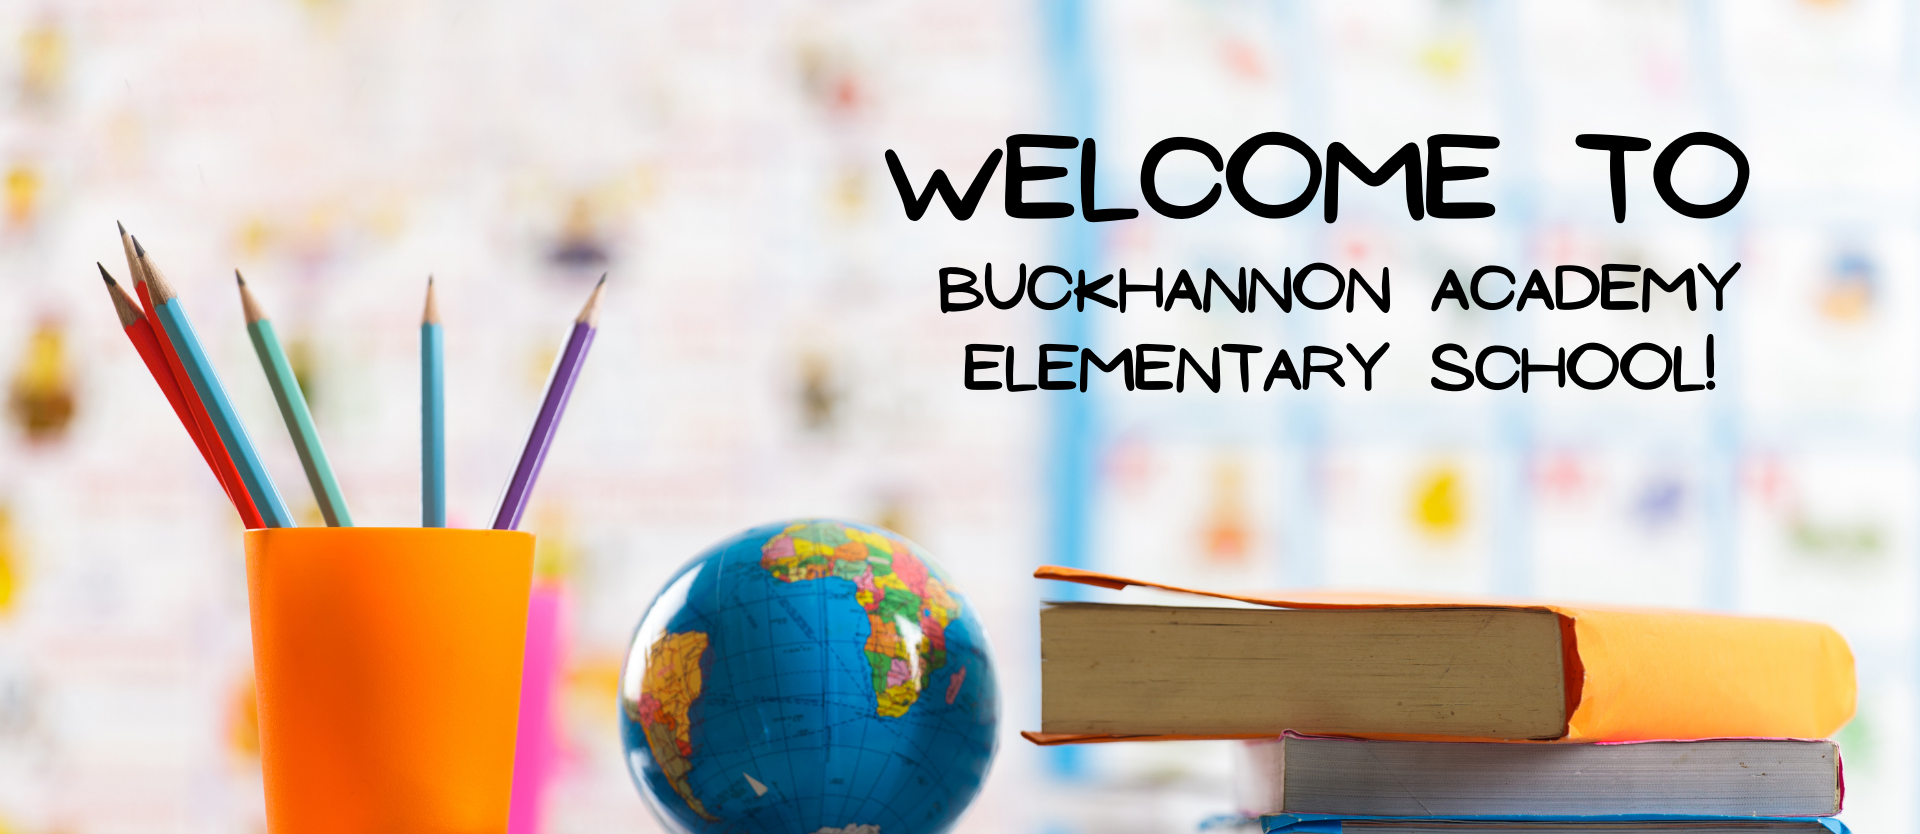 Welcome to Buckhannon Academy Elementary School